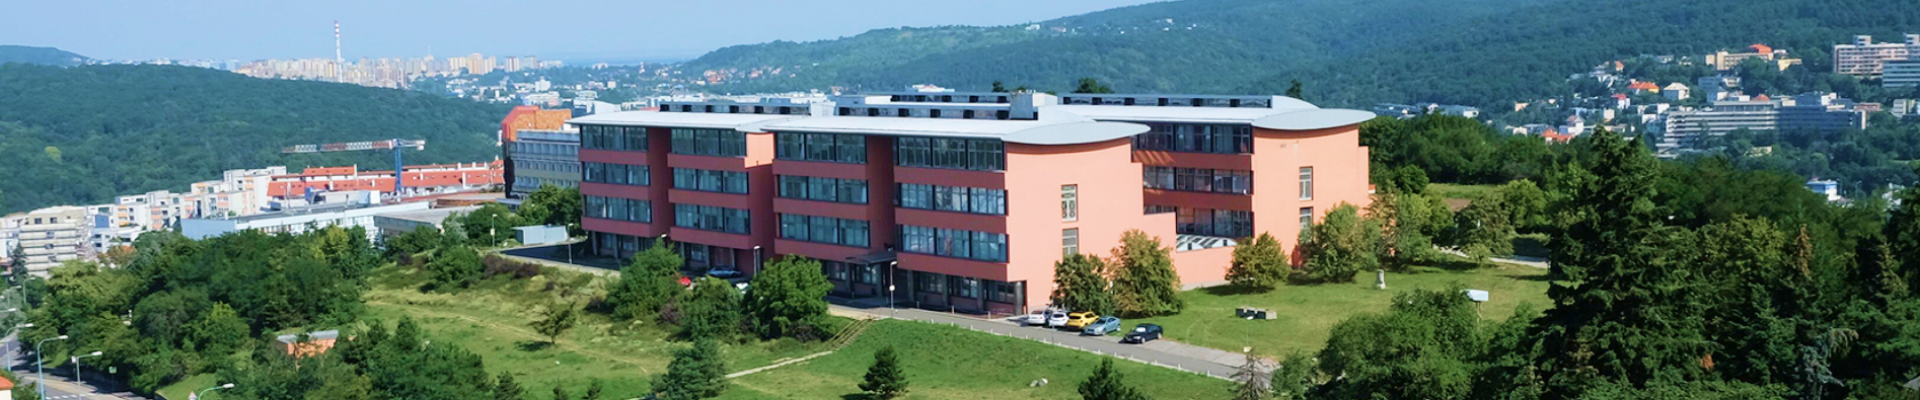 Братиславская Высшая Школа Изобразительных Искусств